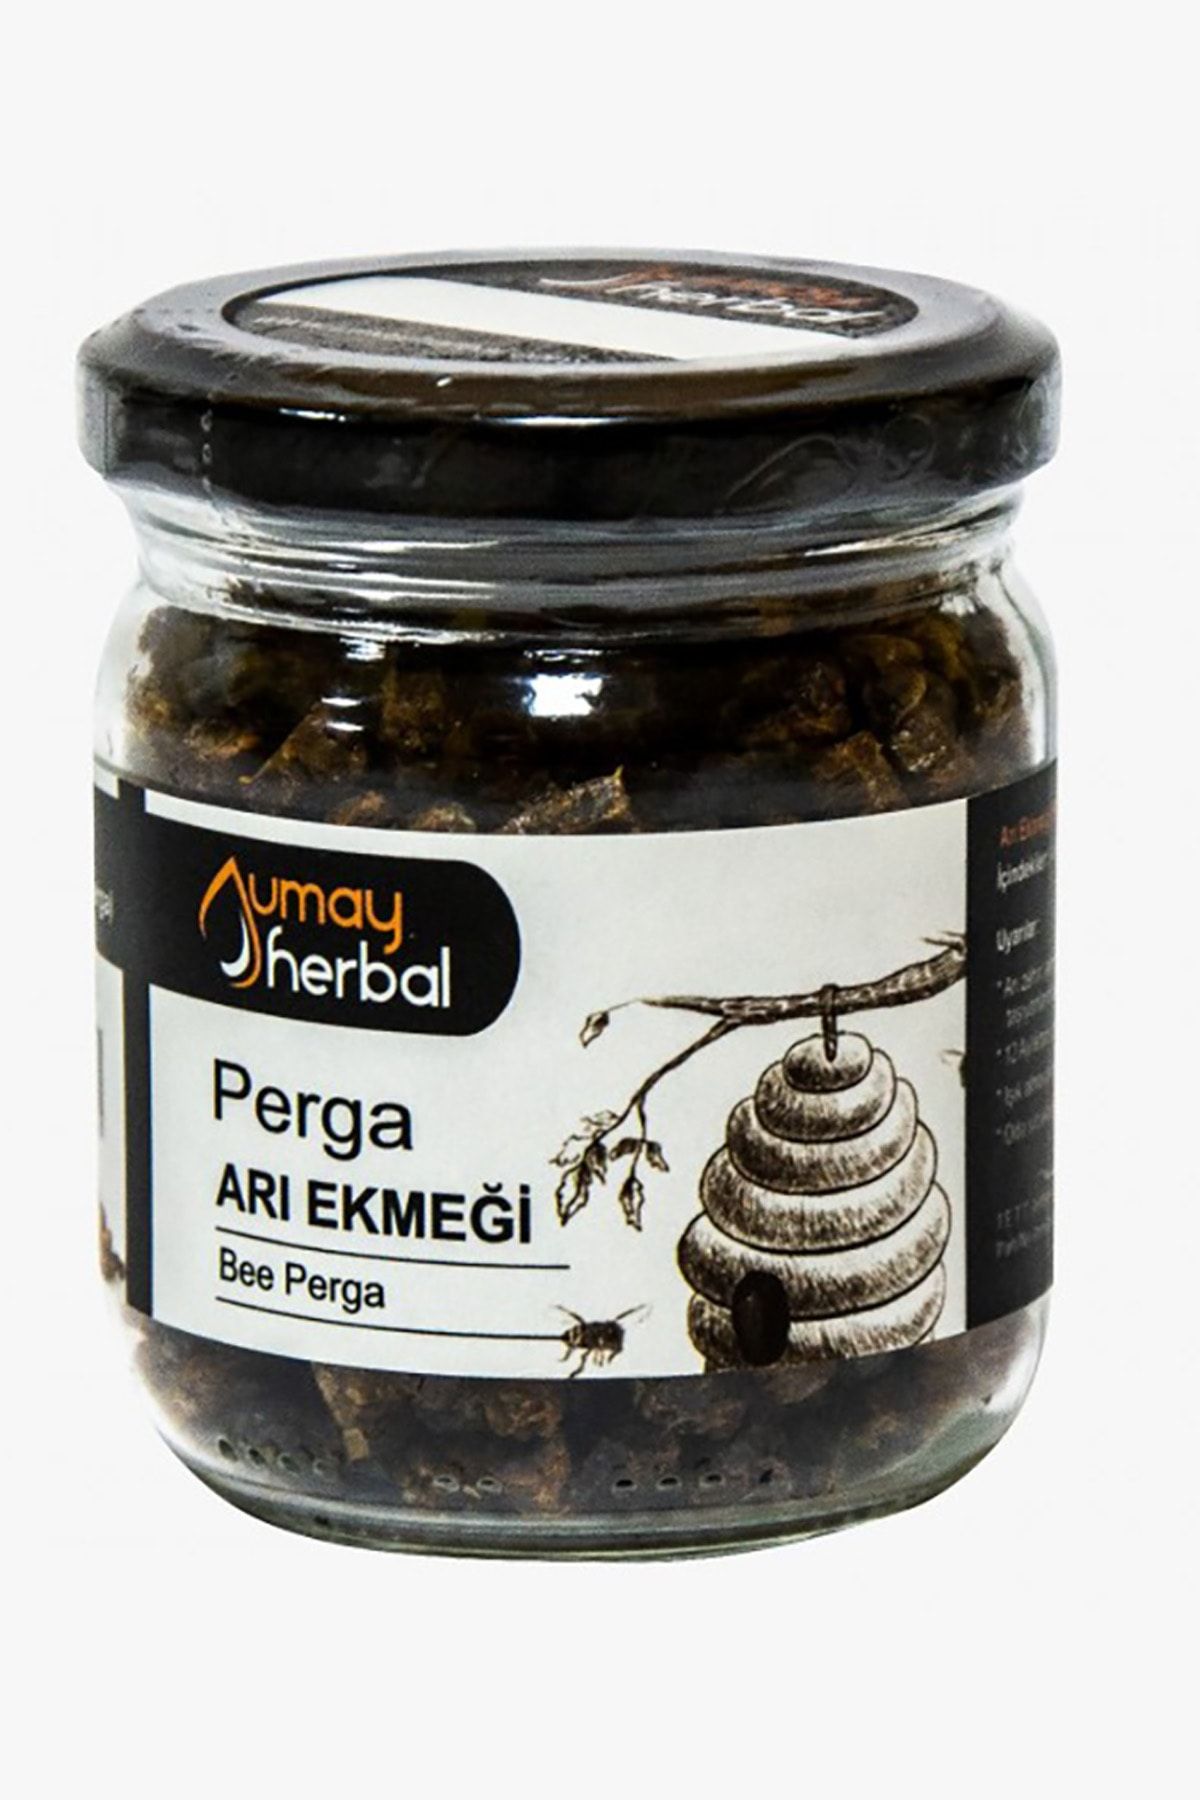 Umay Herbal Organik Perga (Arı Ekmeği) - 100 gr